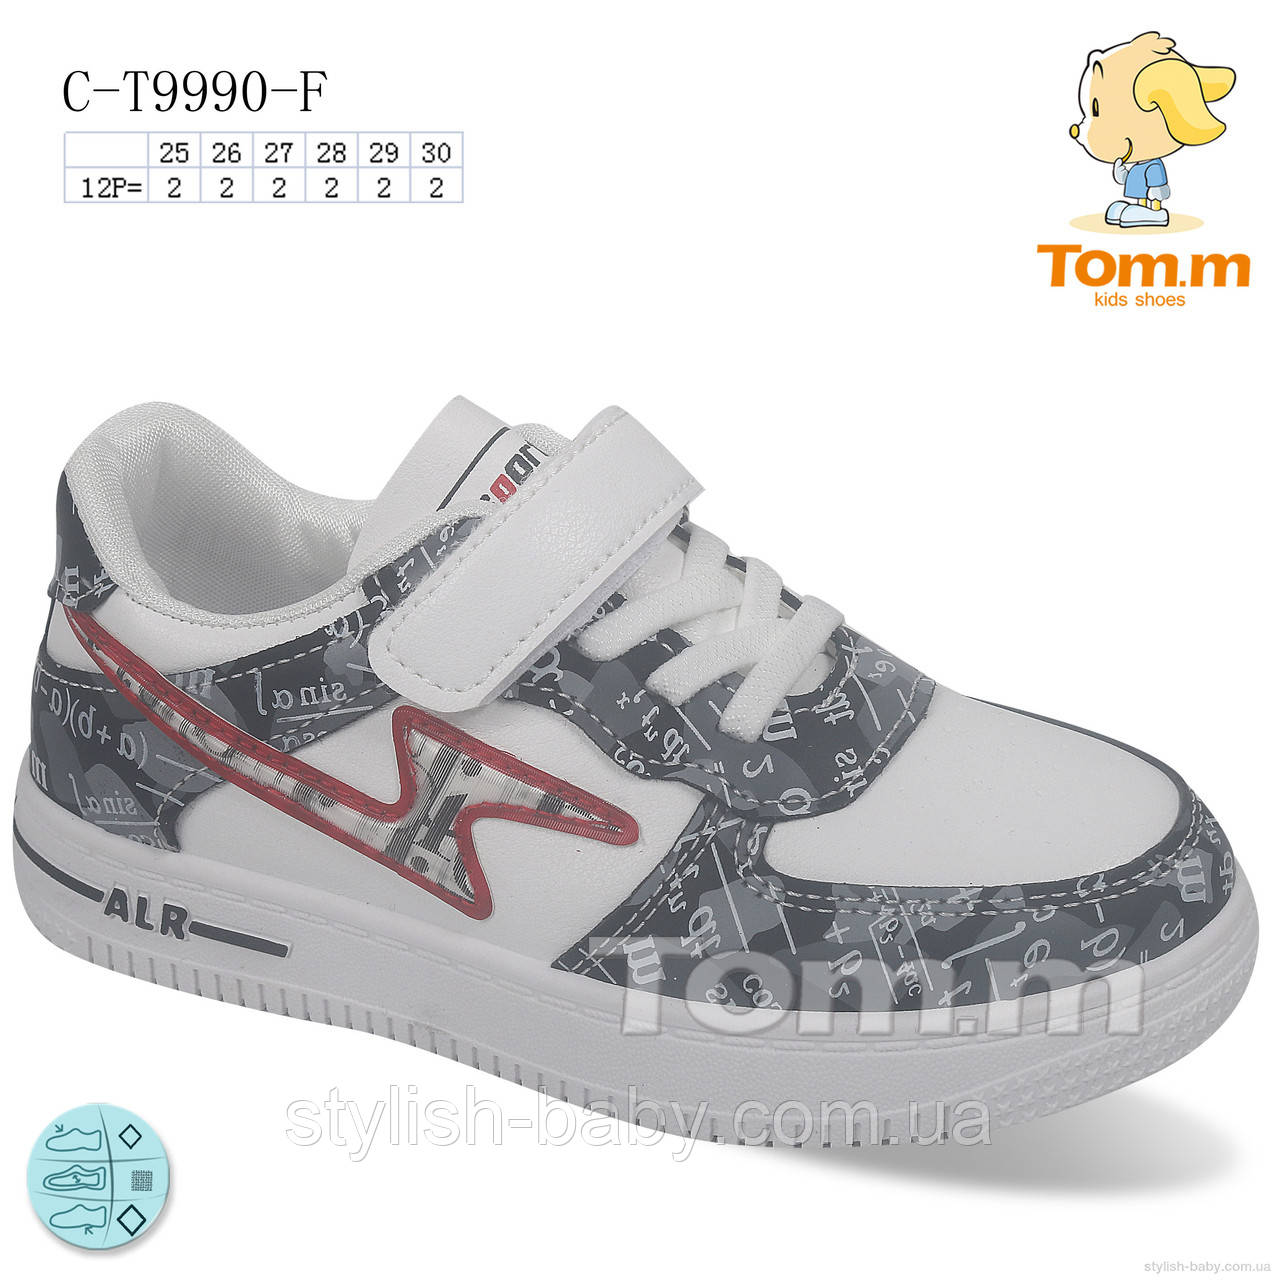 Дитяче взуття оптом. Дитячі кеди 2022 бренду Tom.m для хлопчиків (рр. з 25 по 30)